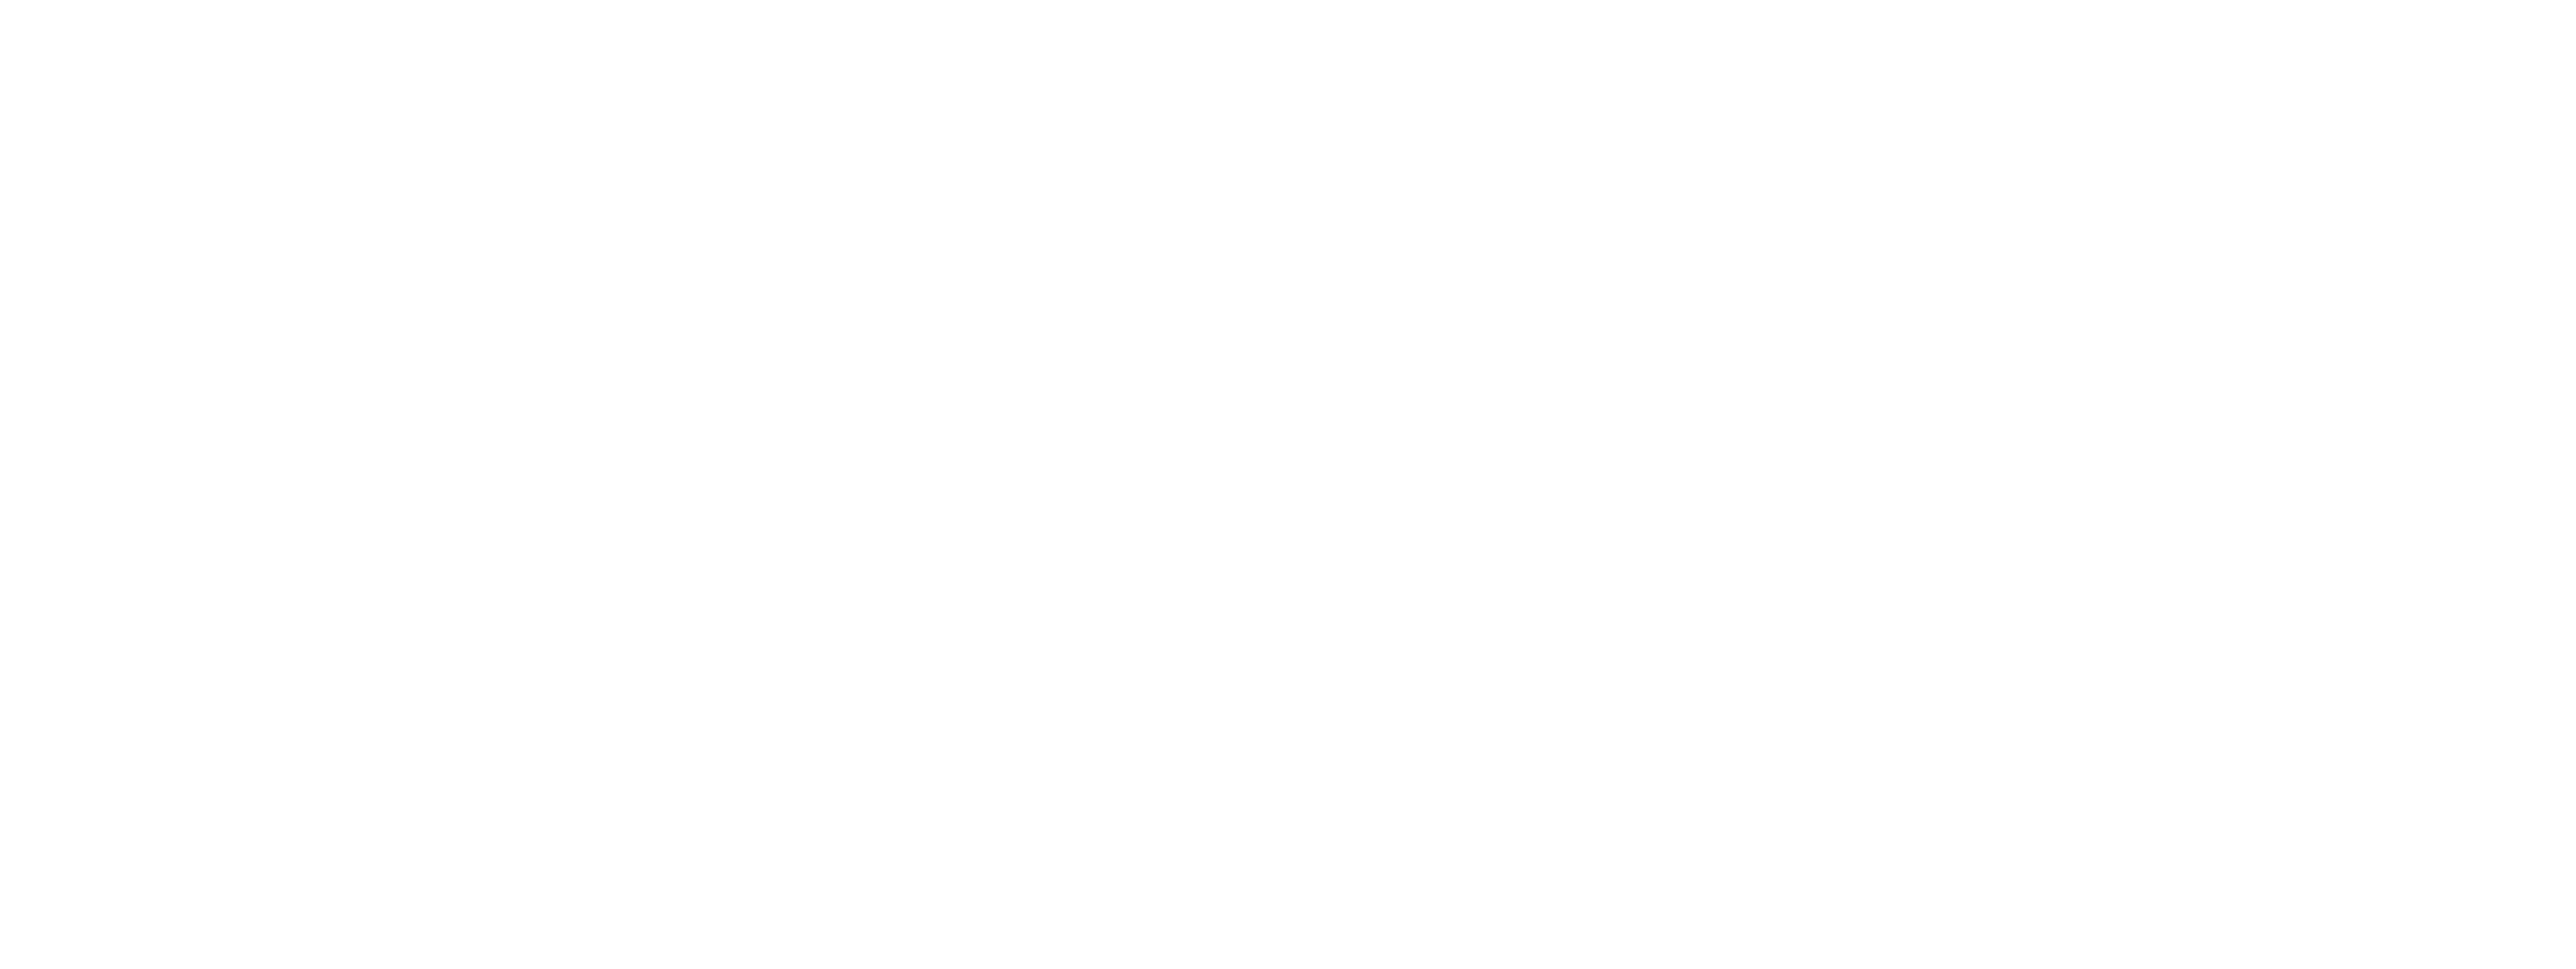 Gaston Lagaffe